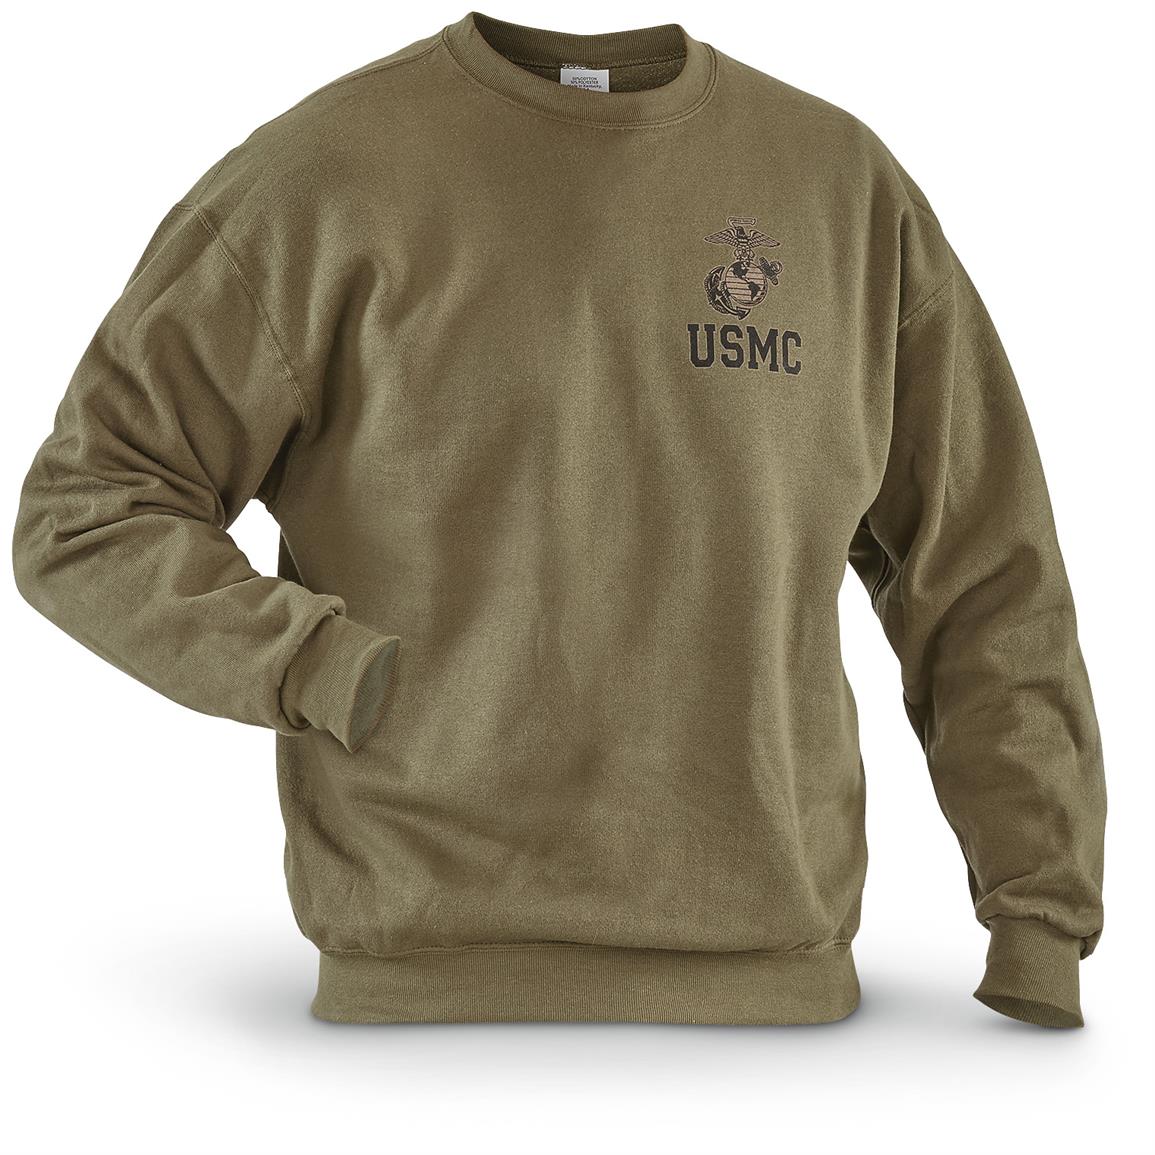 USMC Military Surplus Sweatshirt